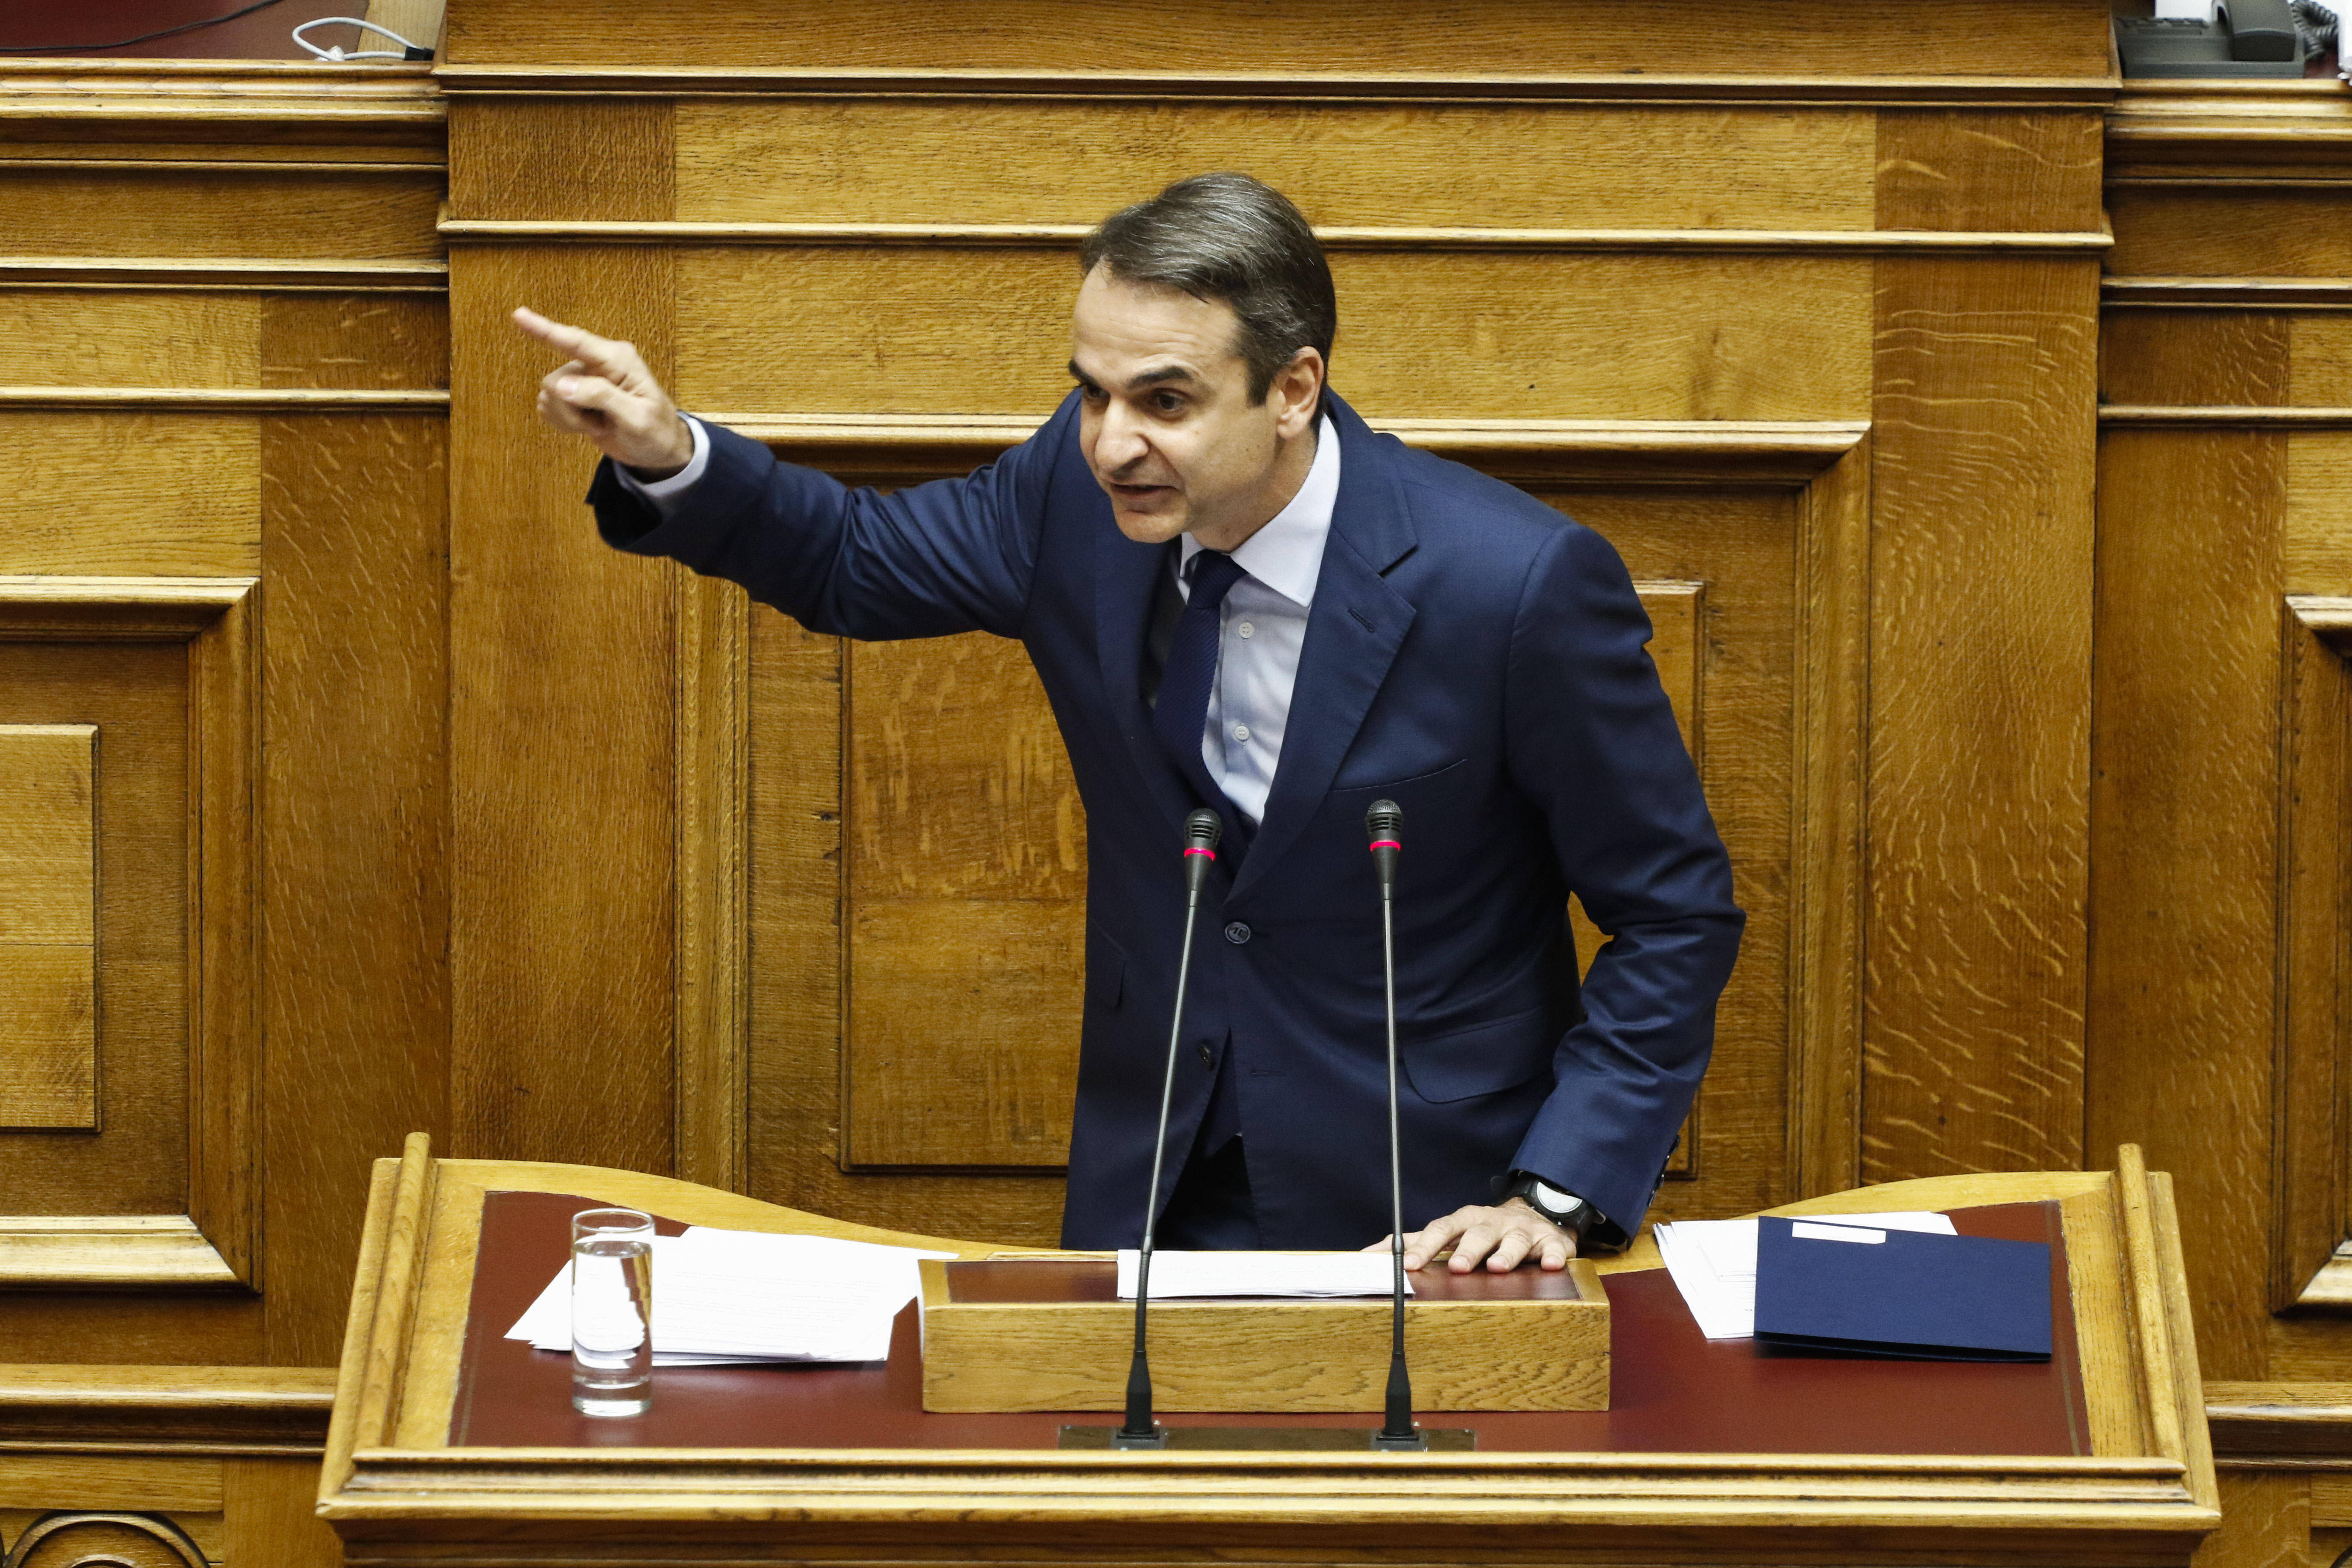 Ψήφος εμπιστοσύνης: Τα επόμενα βήματα σε σχέση με το νομοθετικό έργο περιέγραψε ο Μητσοτάκης